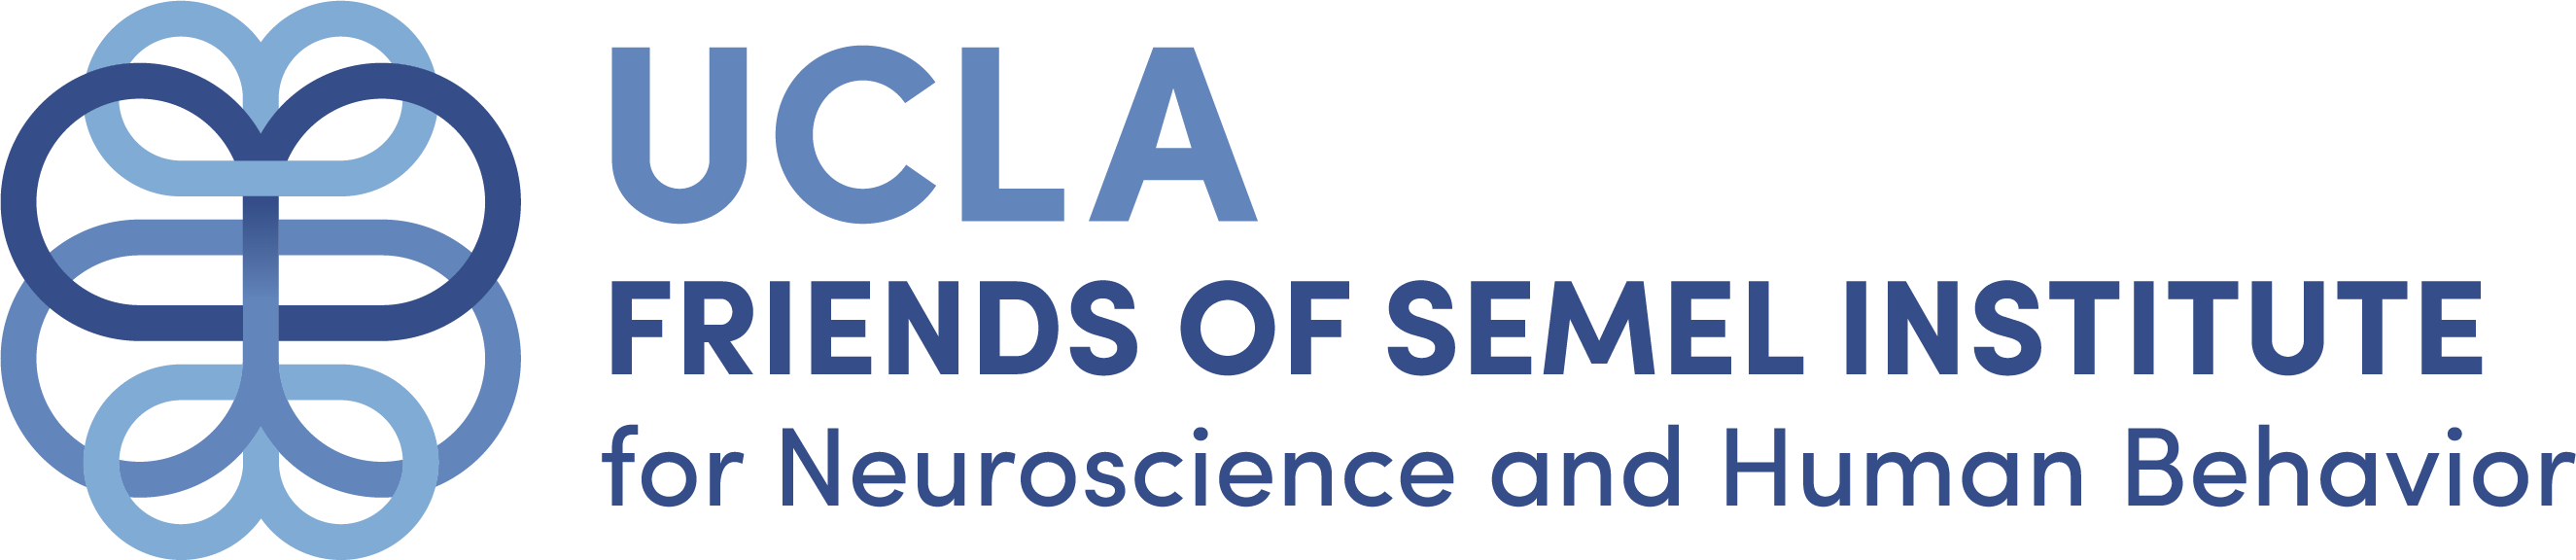 The Friends of the Semel Institute logo